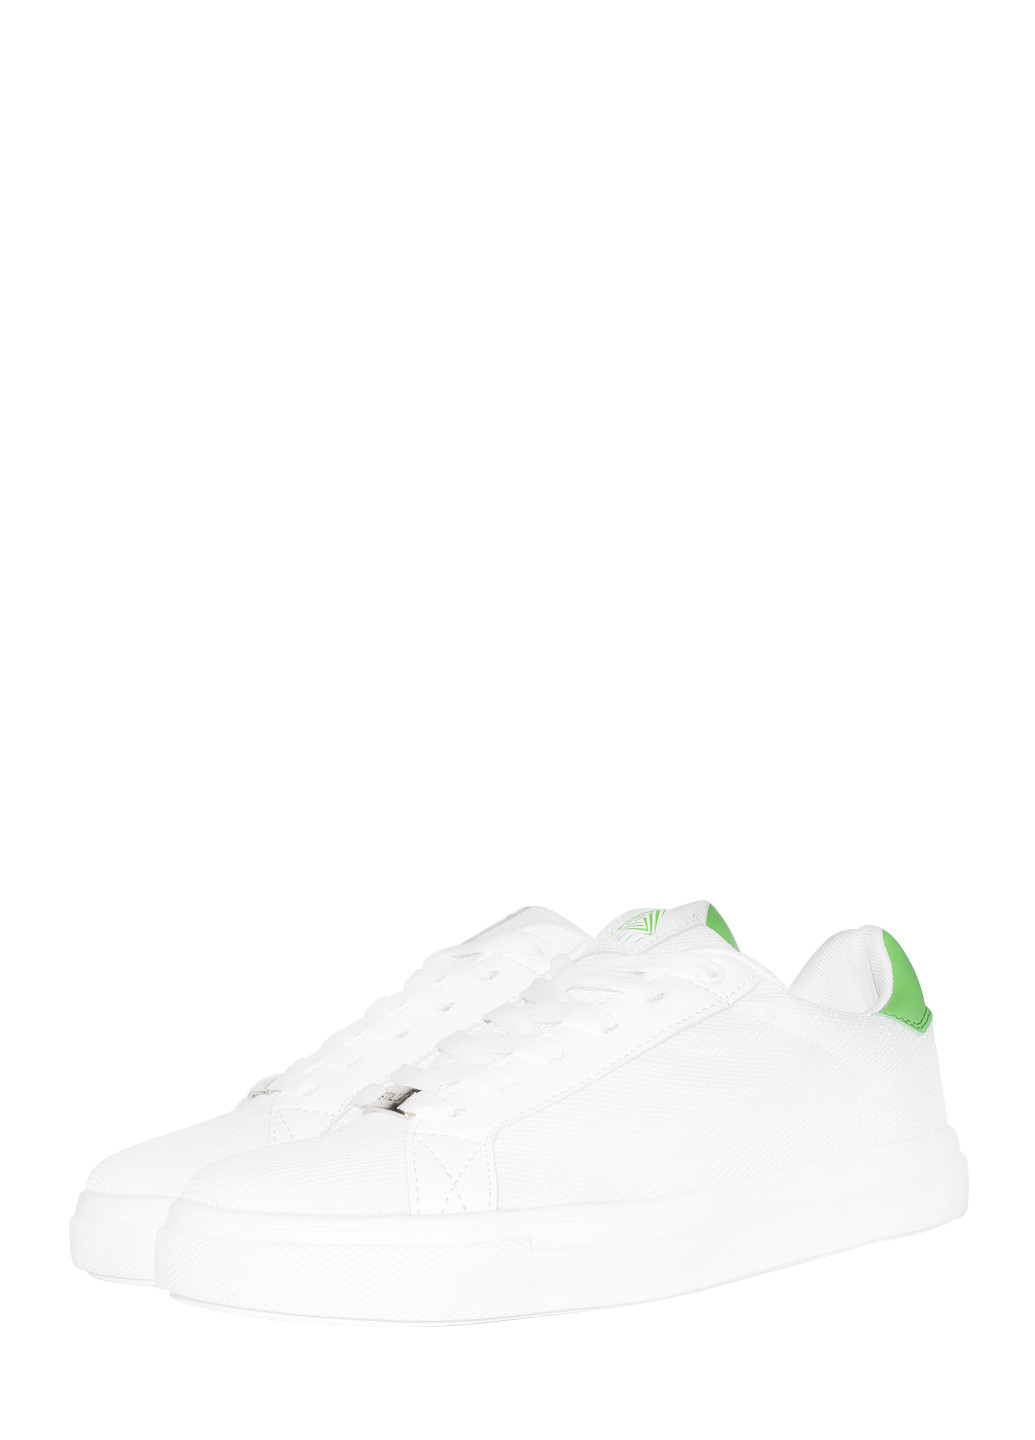 Цветные демисезонные кроссовки st5350-8 white-green Stilli